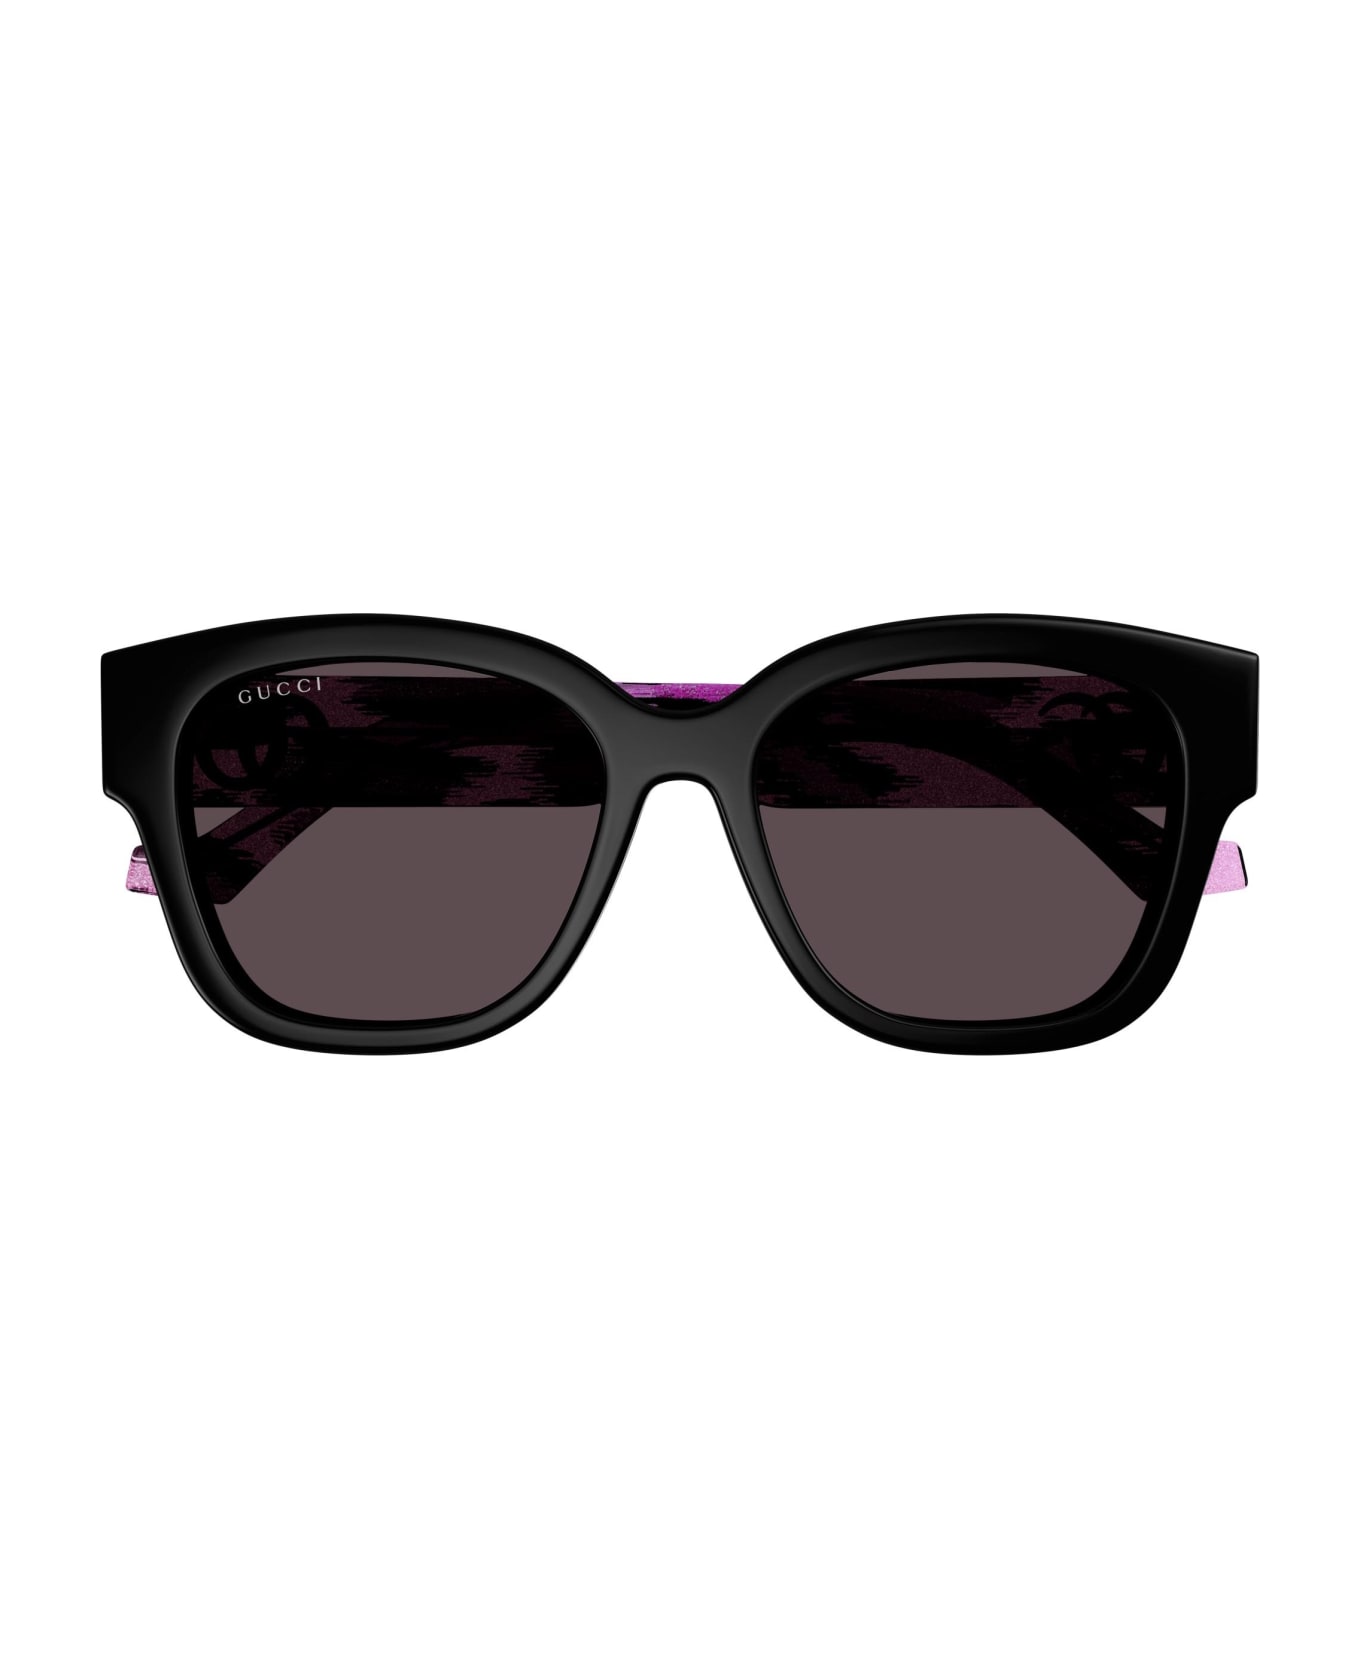 Gucci Eyewear Sunglasses - Nero/Rosso サングラス